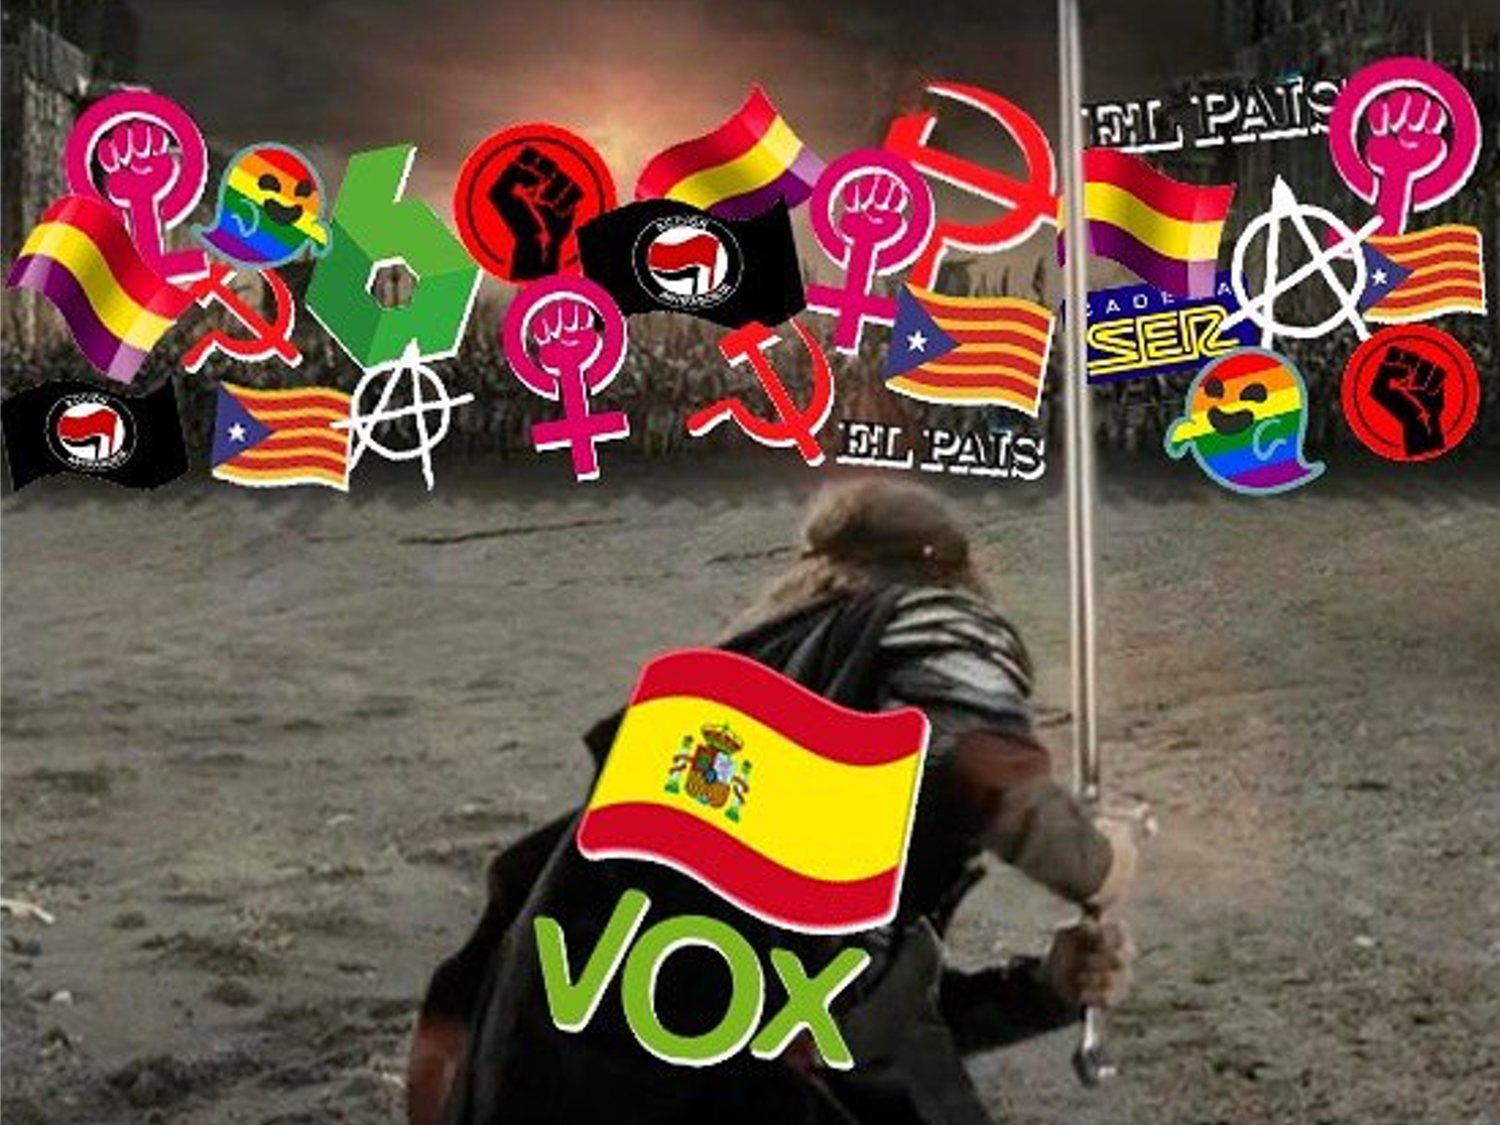 "Comienza la batalla" contra personas LGTBI o feministas: así celebra VOX las elecciones